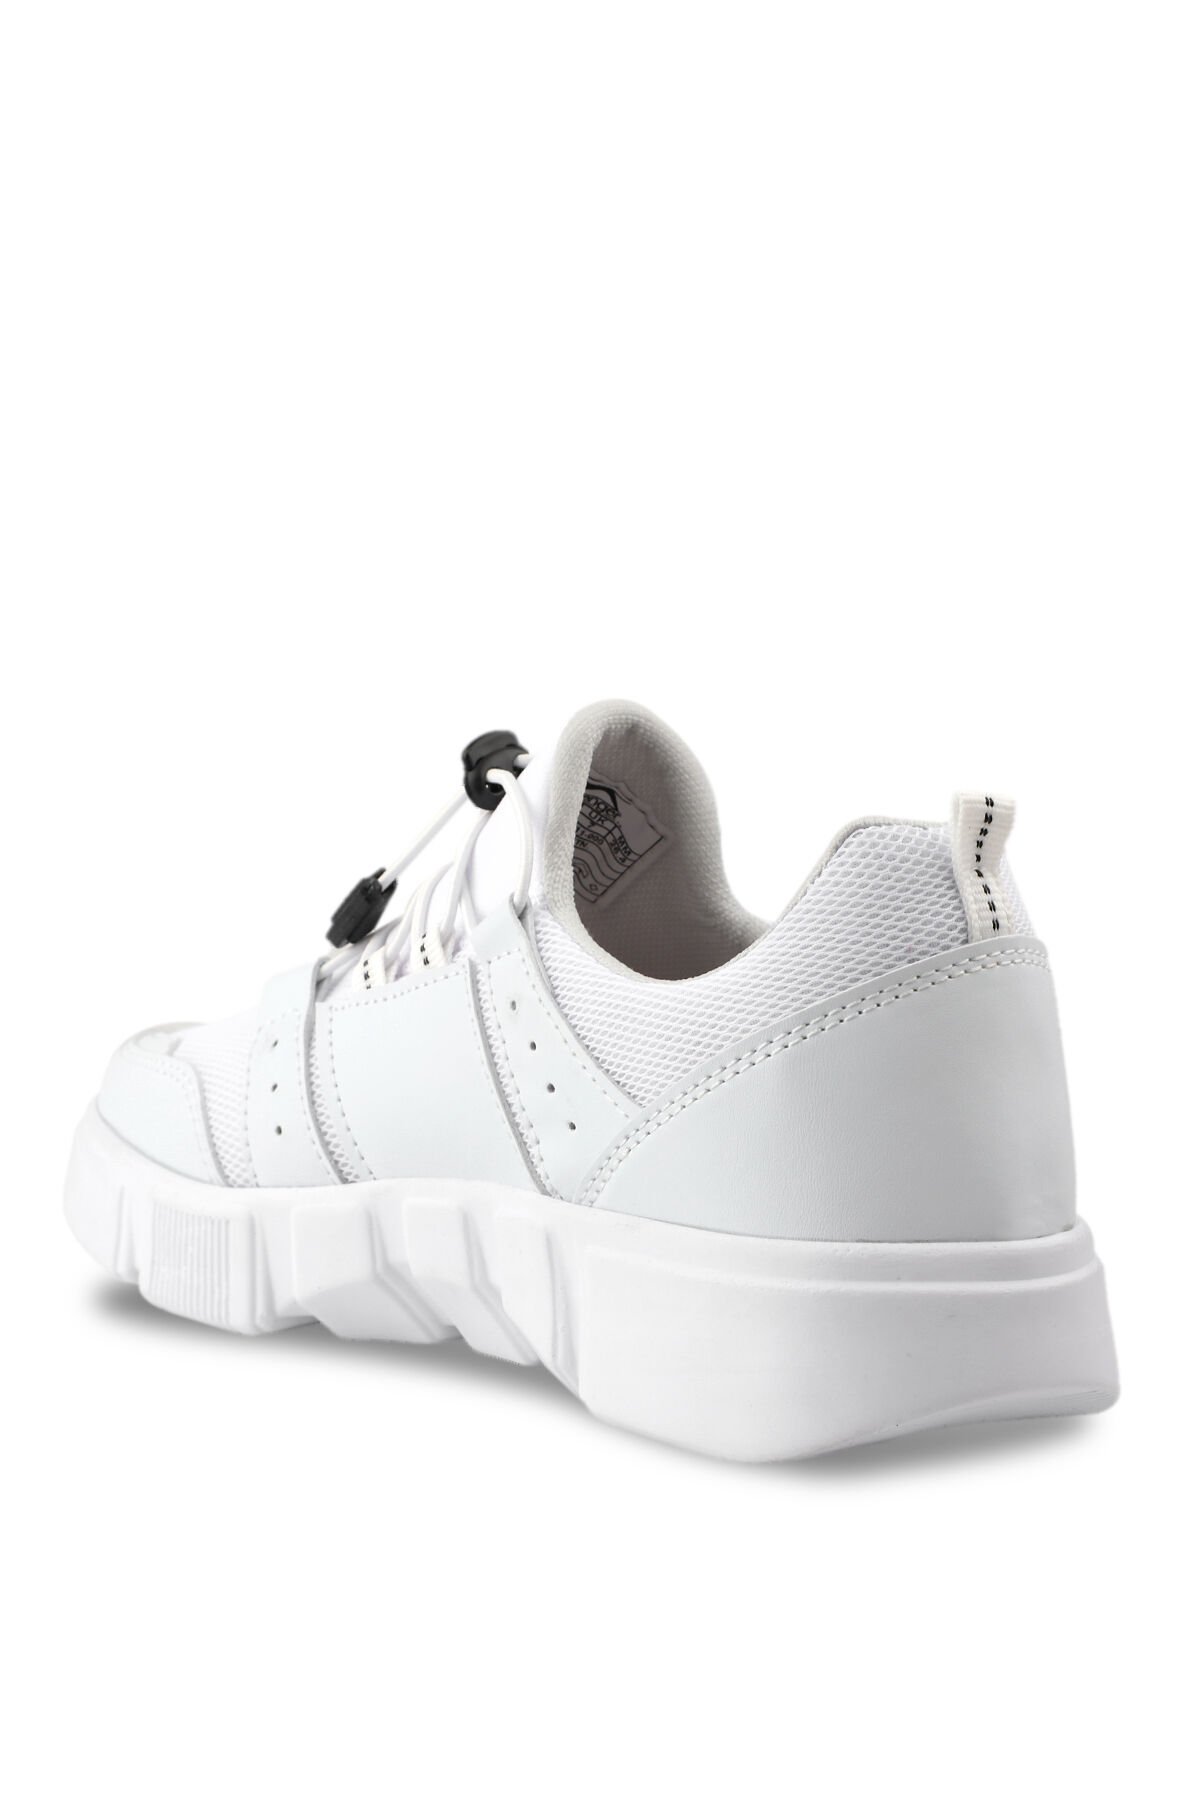 Slazenger DARLA KTN Sneaker Erkek Ayakkabı Beyaz - Thumbnail